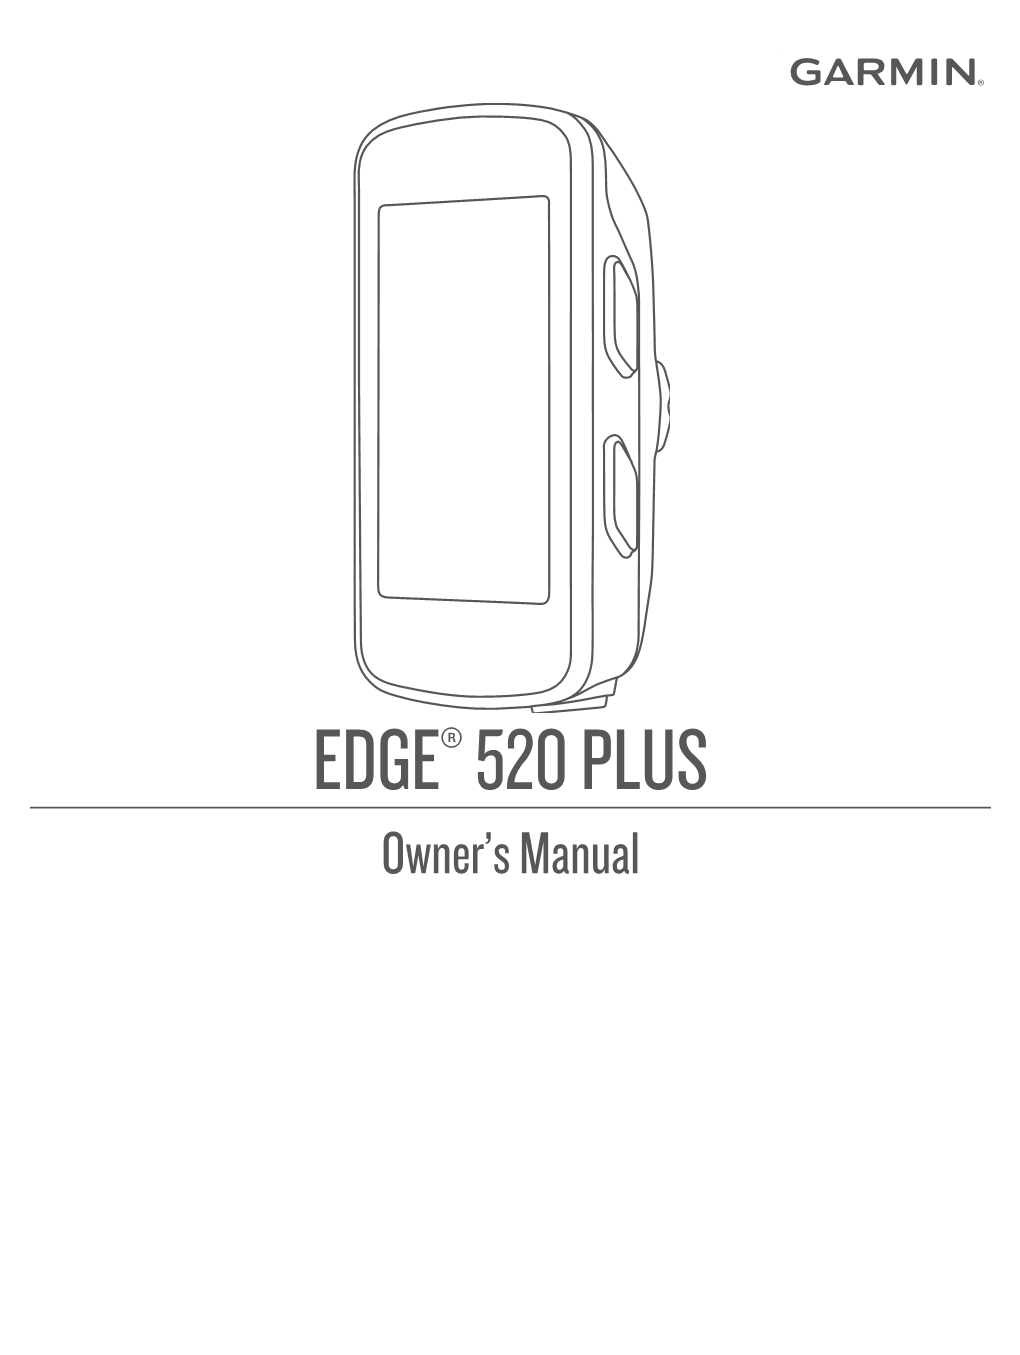 EDGE 520 PLUS Manual